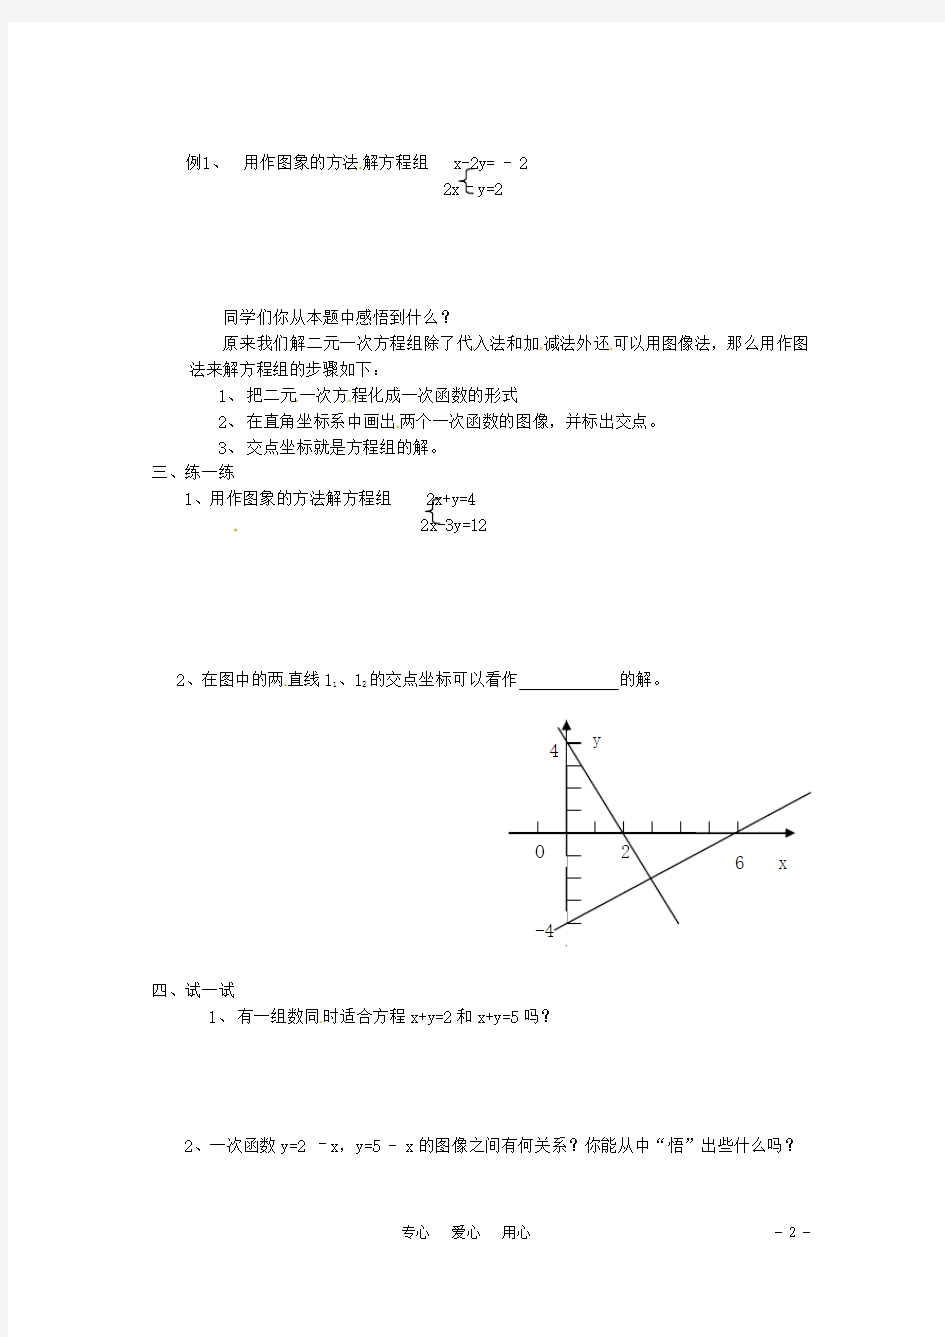 八年级数学上册 5.5 二元一次方程组的图象解法教案 苏教版【教案】